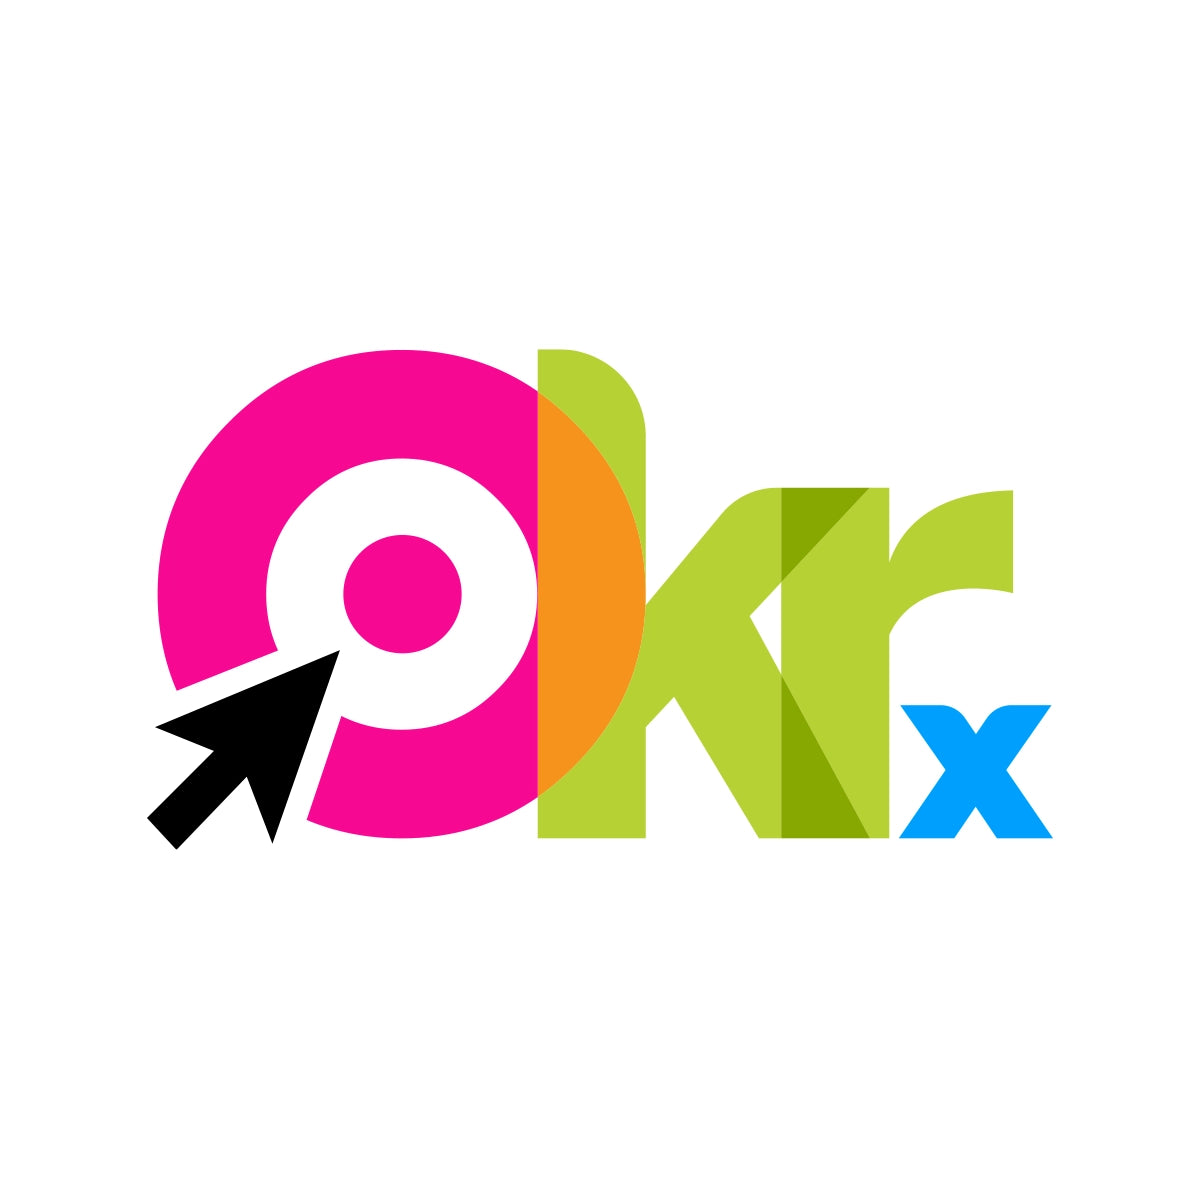 okrx.com